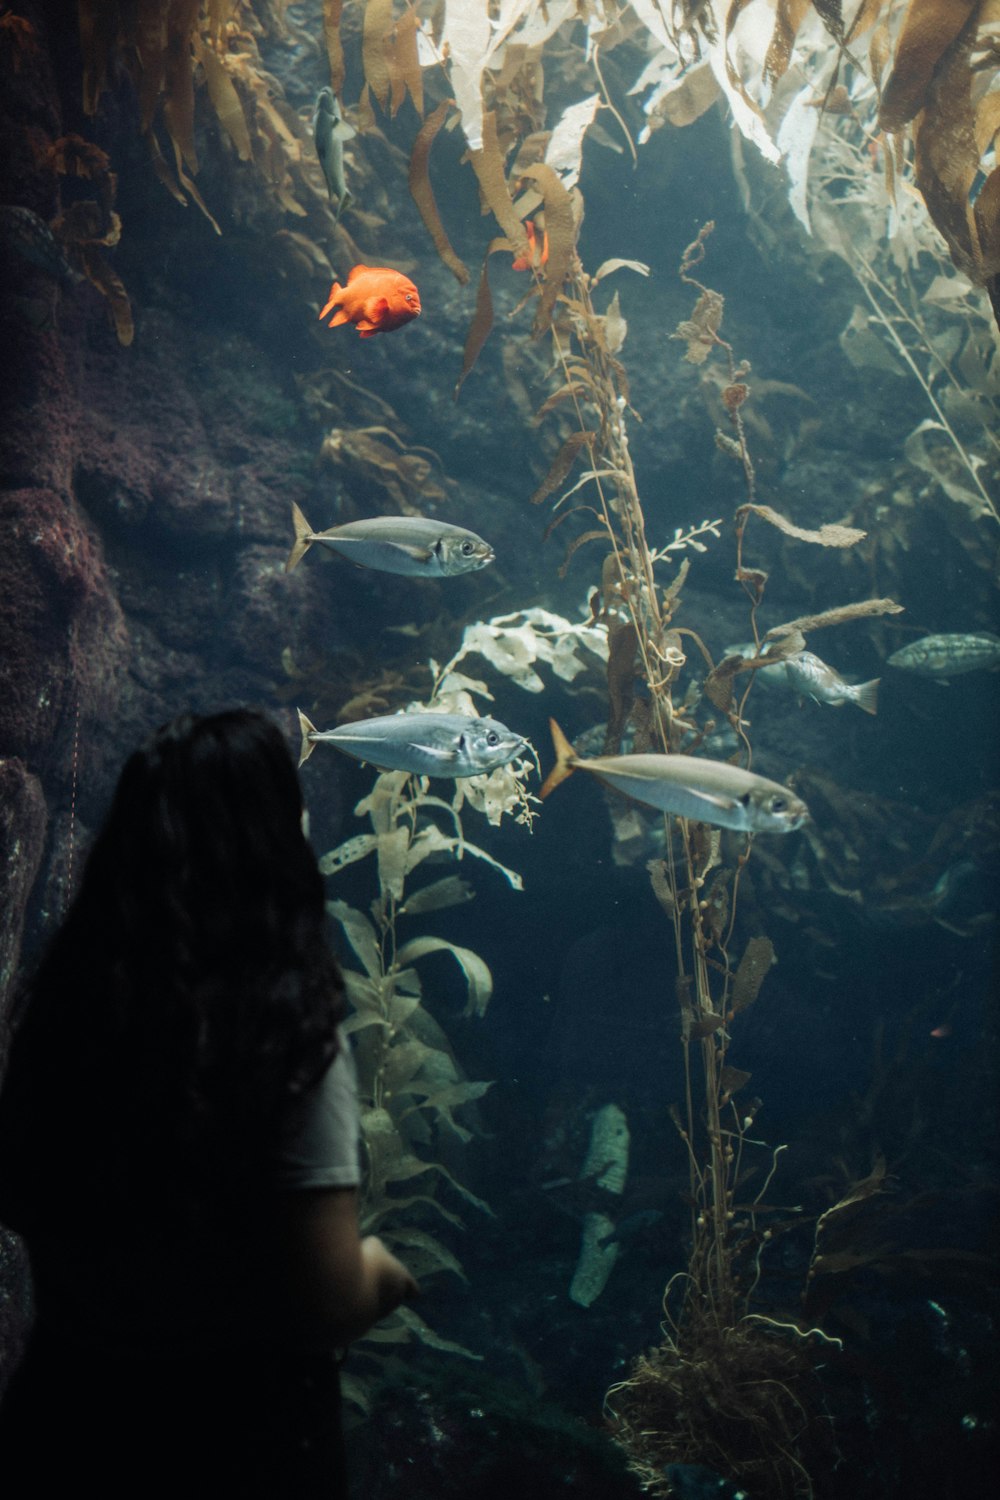 a woman looking at fish in an aquarium